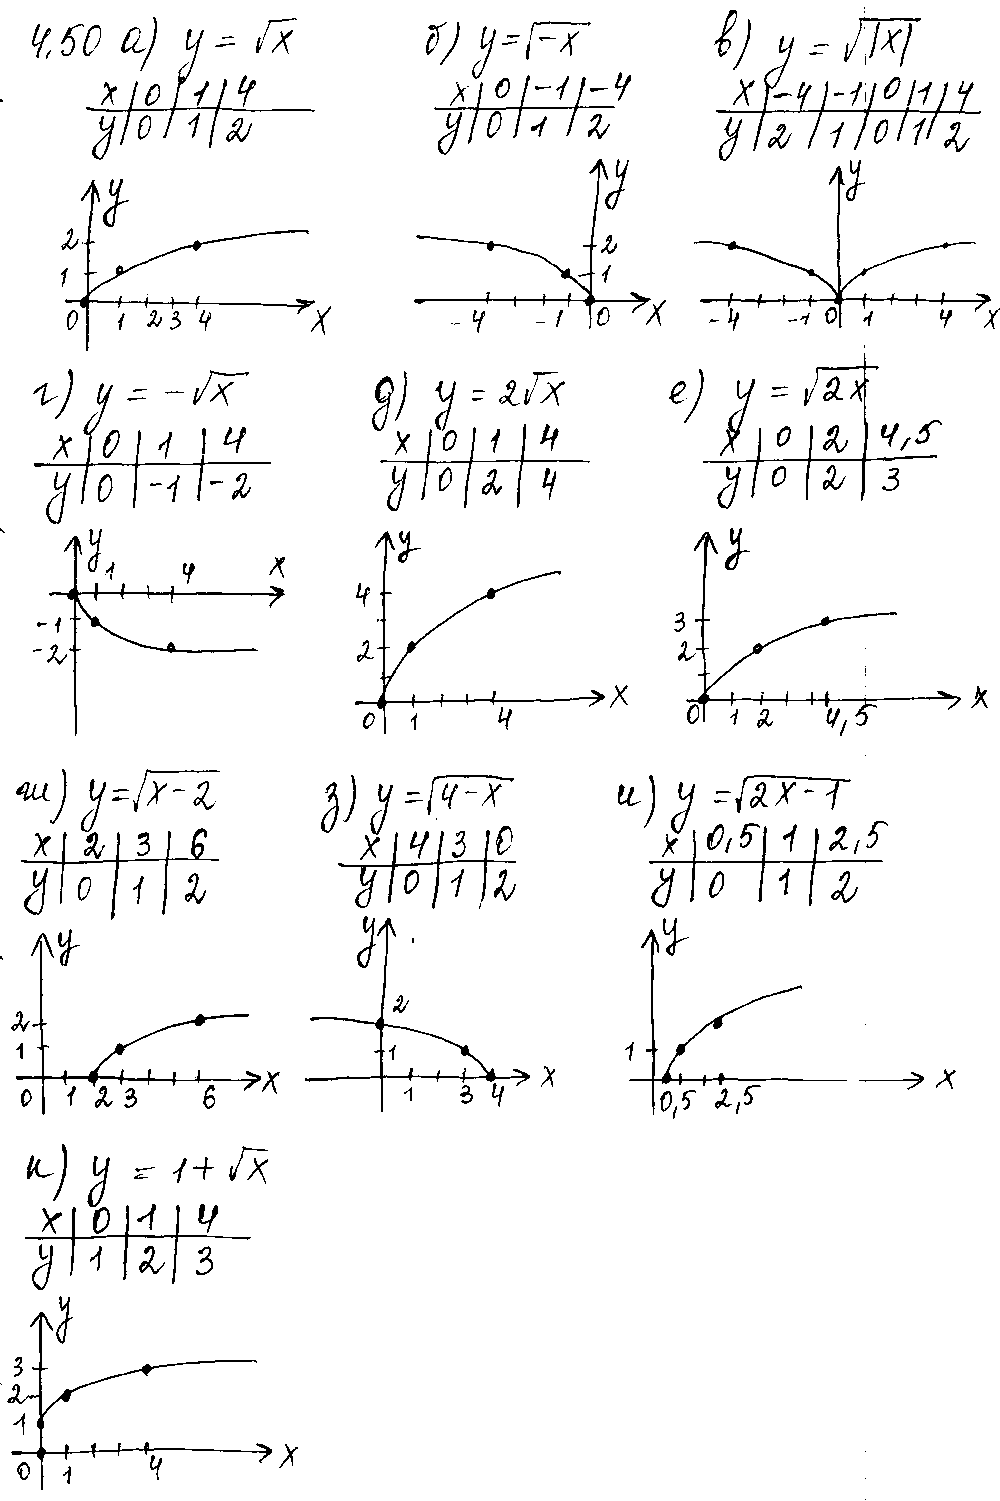 ГДЗ Алгебра 9 класс - 50